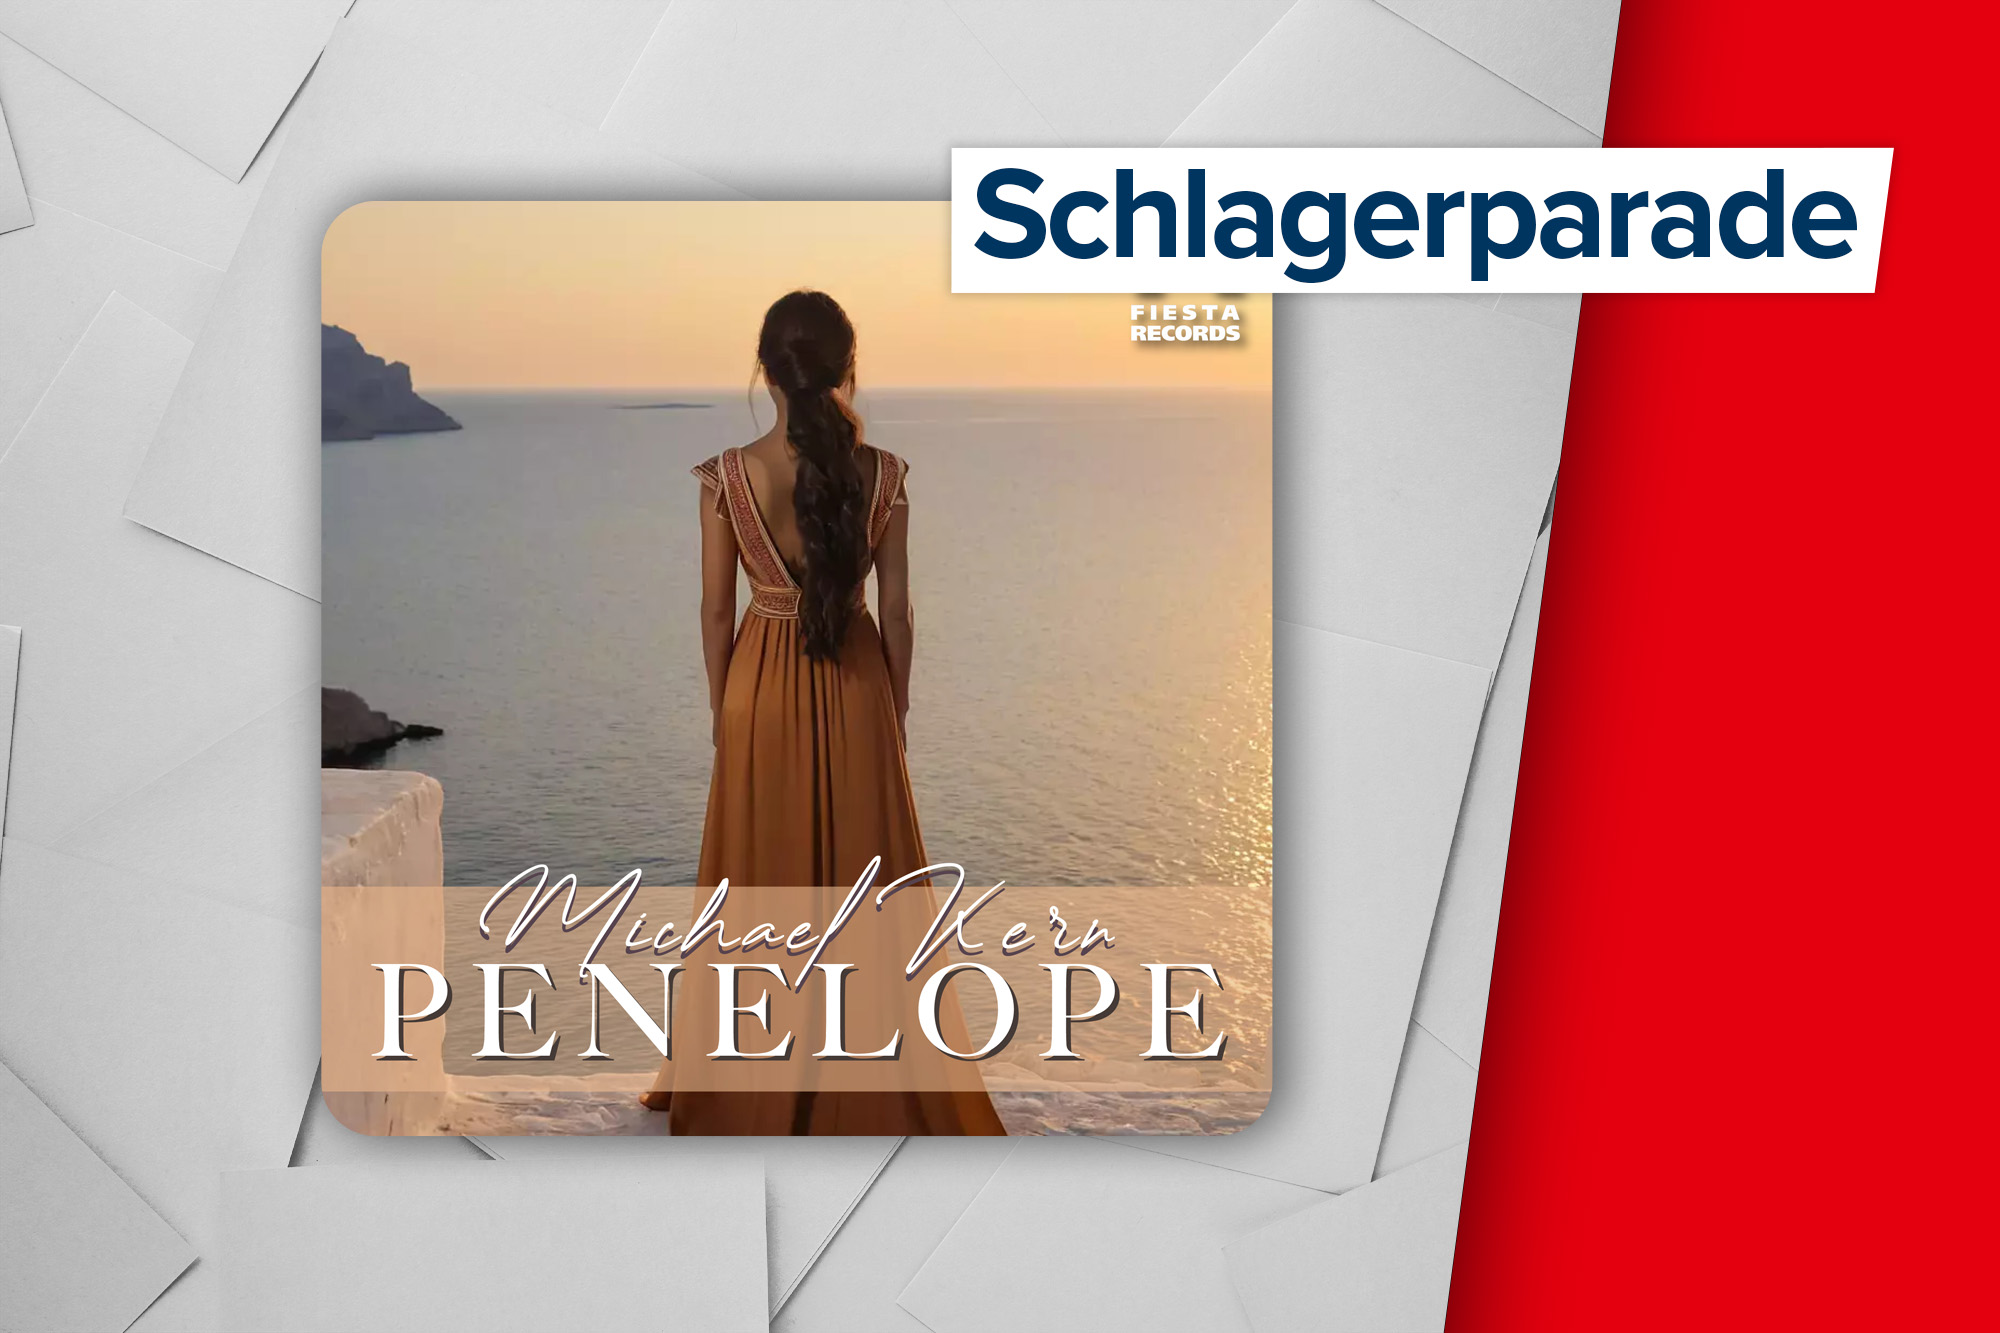 Höchster Neueinstieg in der Schlagerparade: "Penelope" von Michael Kern